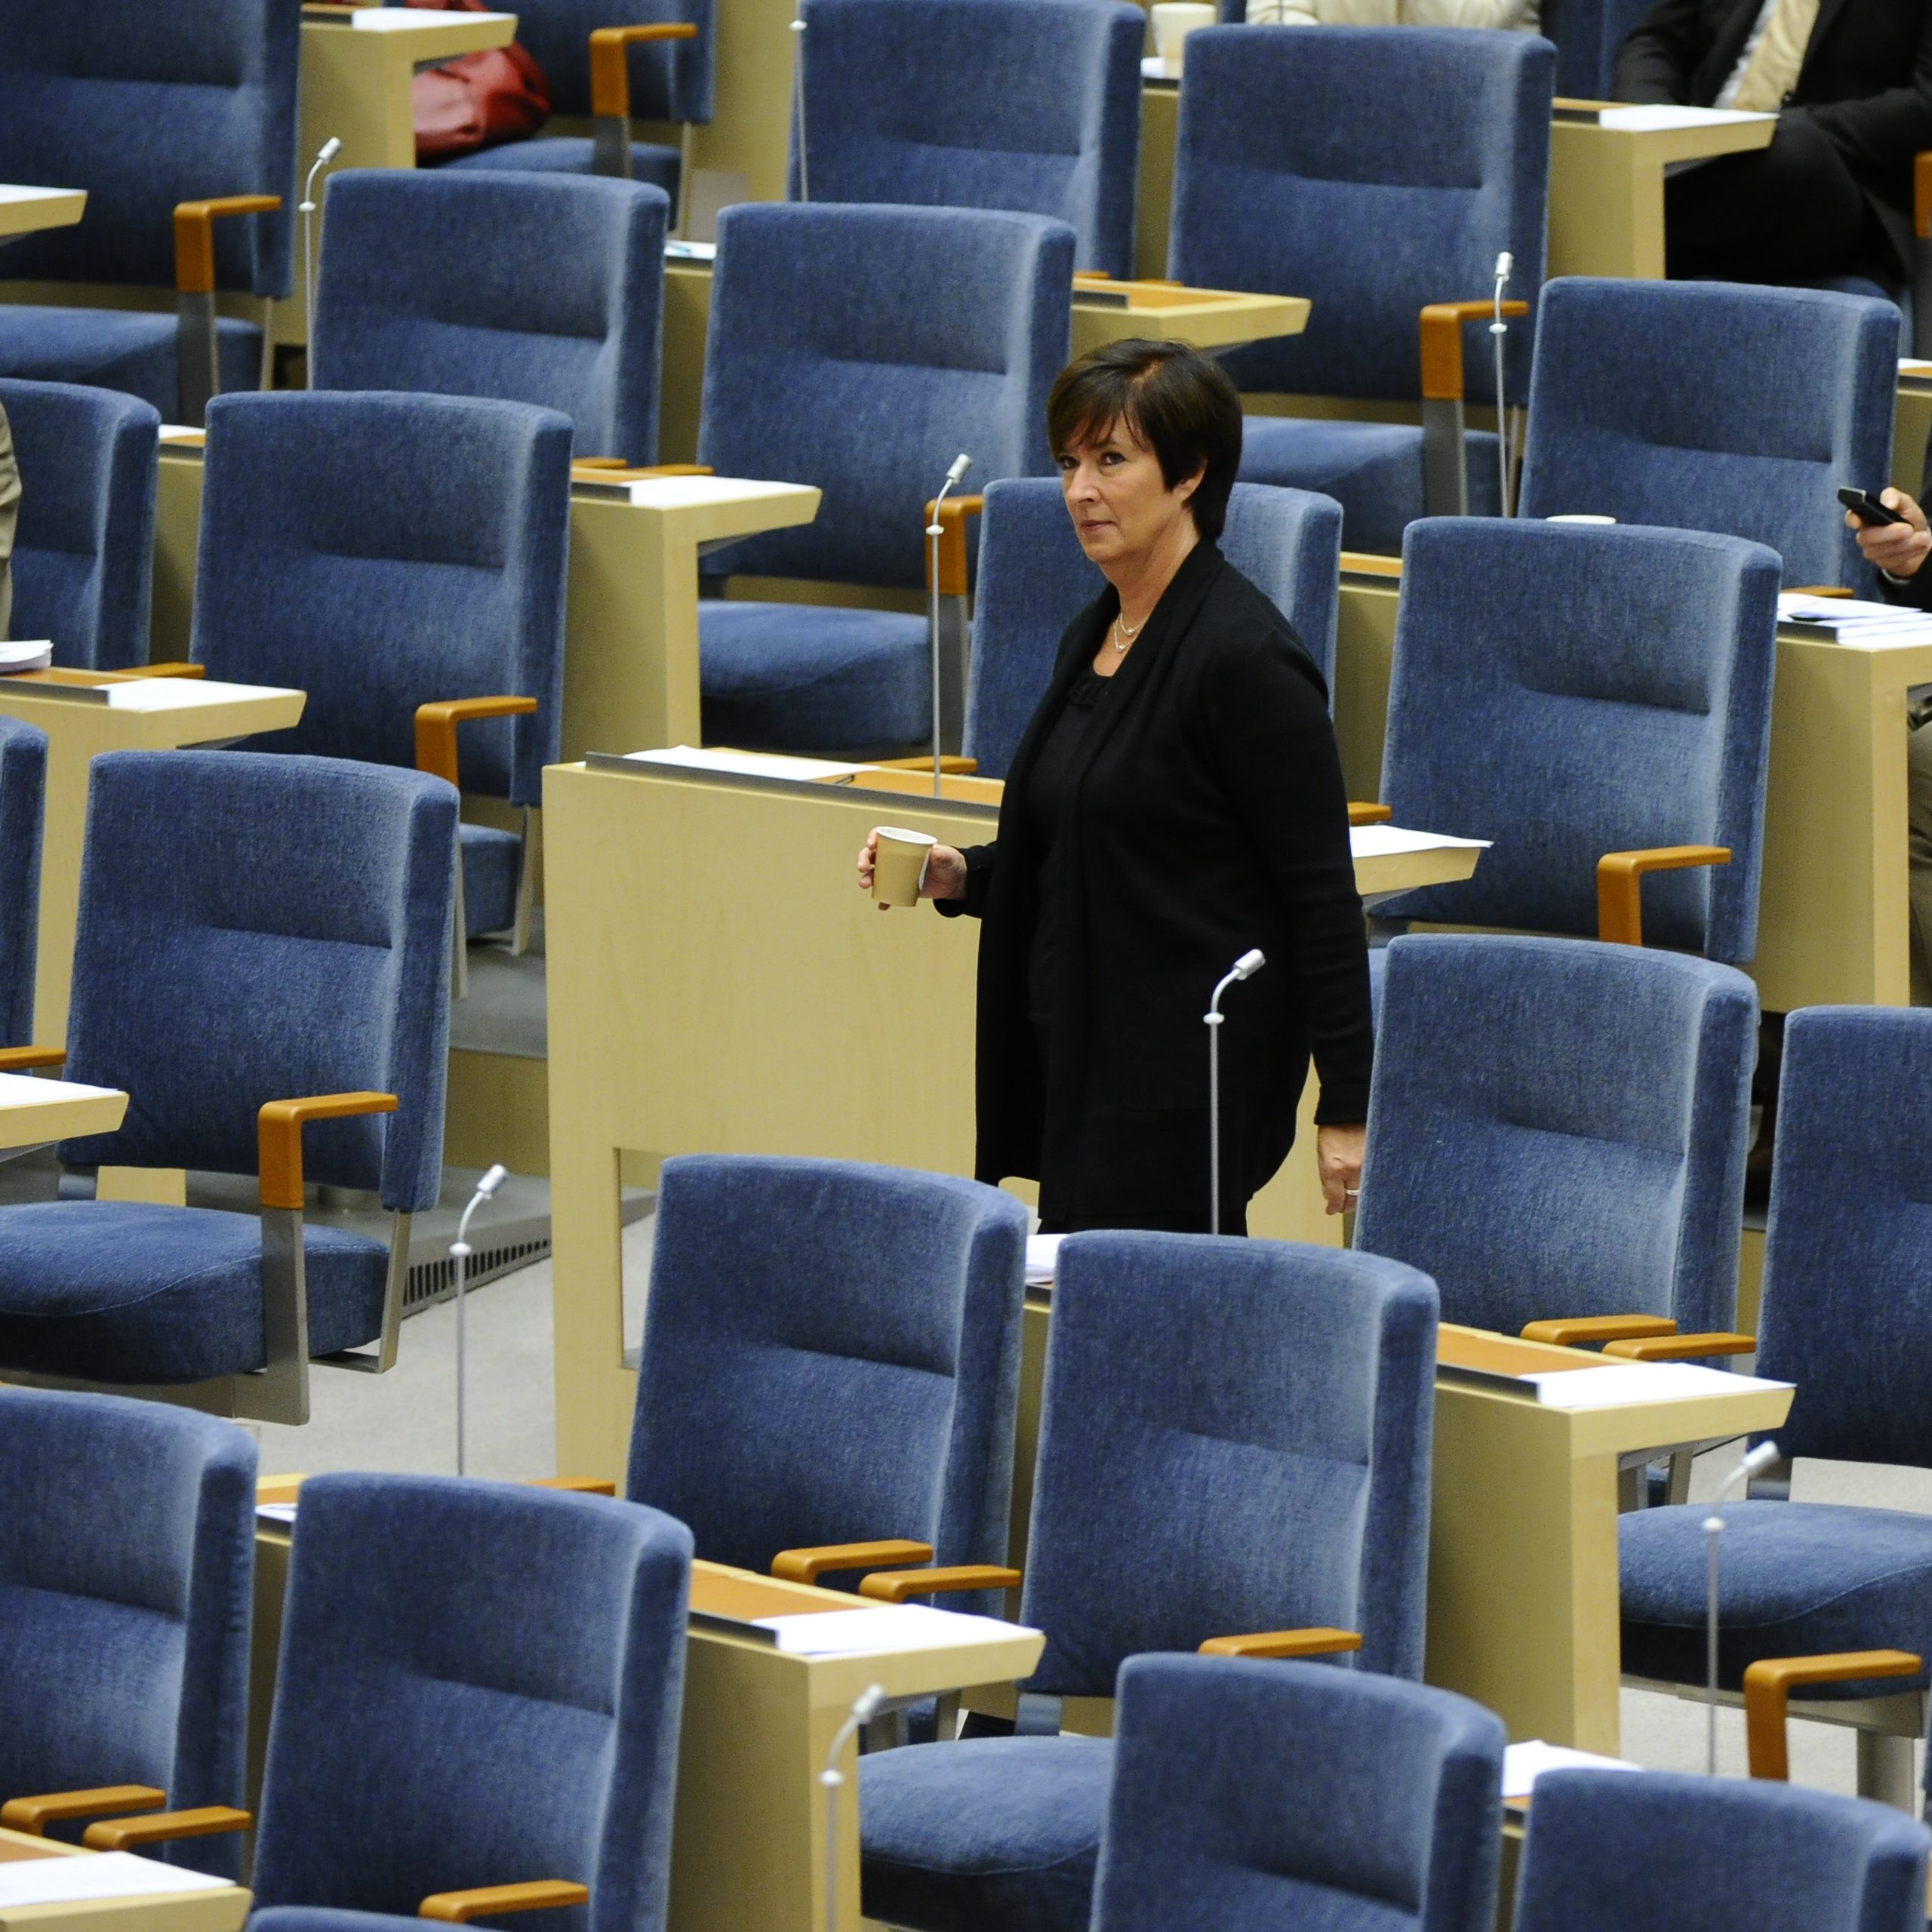 Riksdagsvalet 2010, Mona Sahlin, Avgå, Socialdemokraterna, Oppositionen, Rödgröna regeringen, Ibrahim Baylan